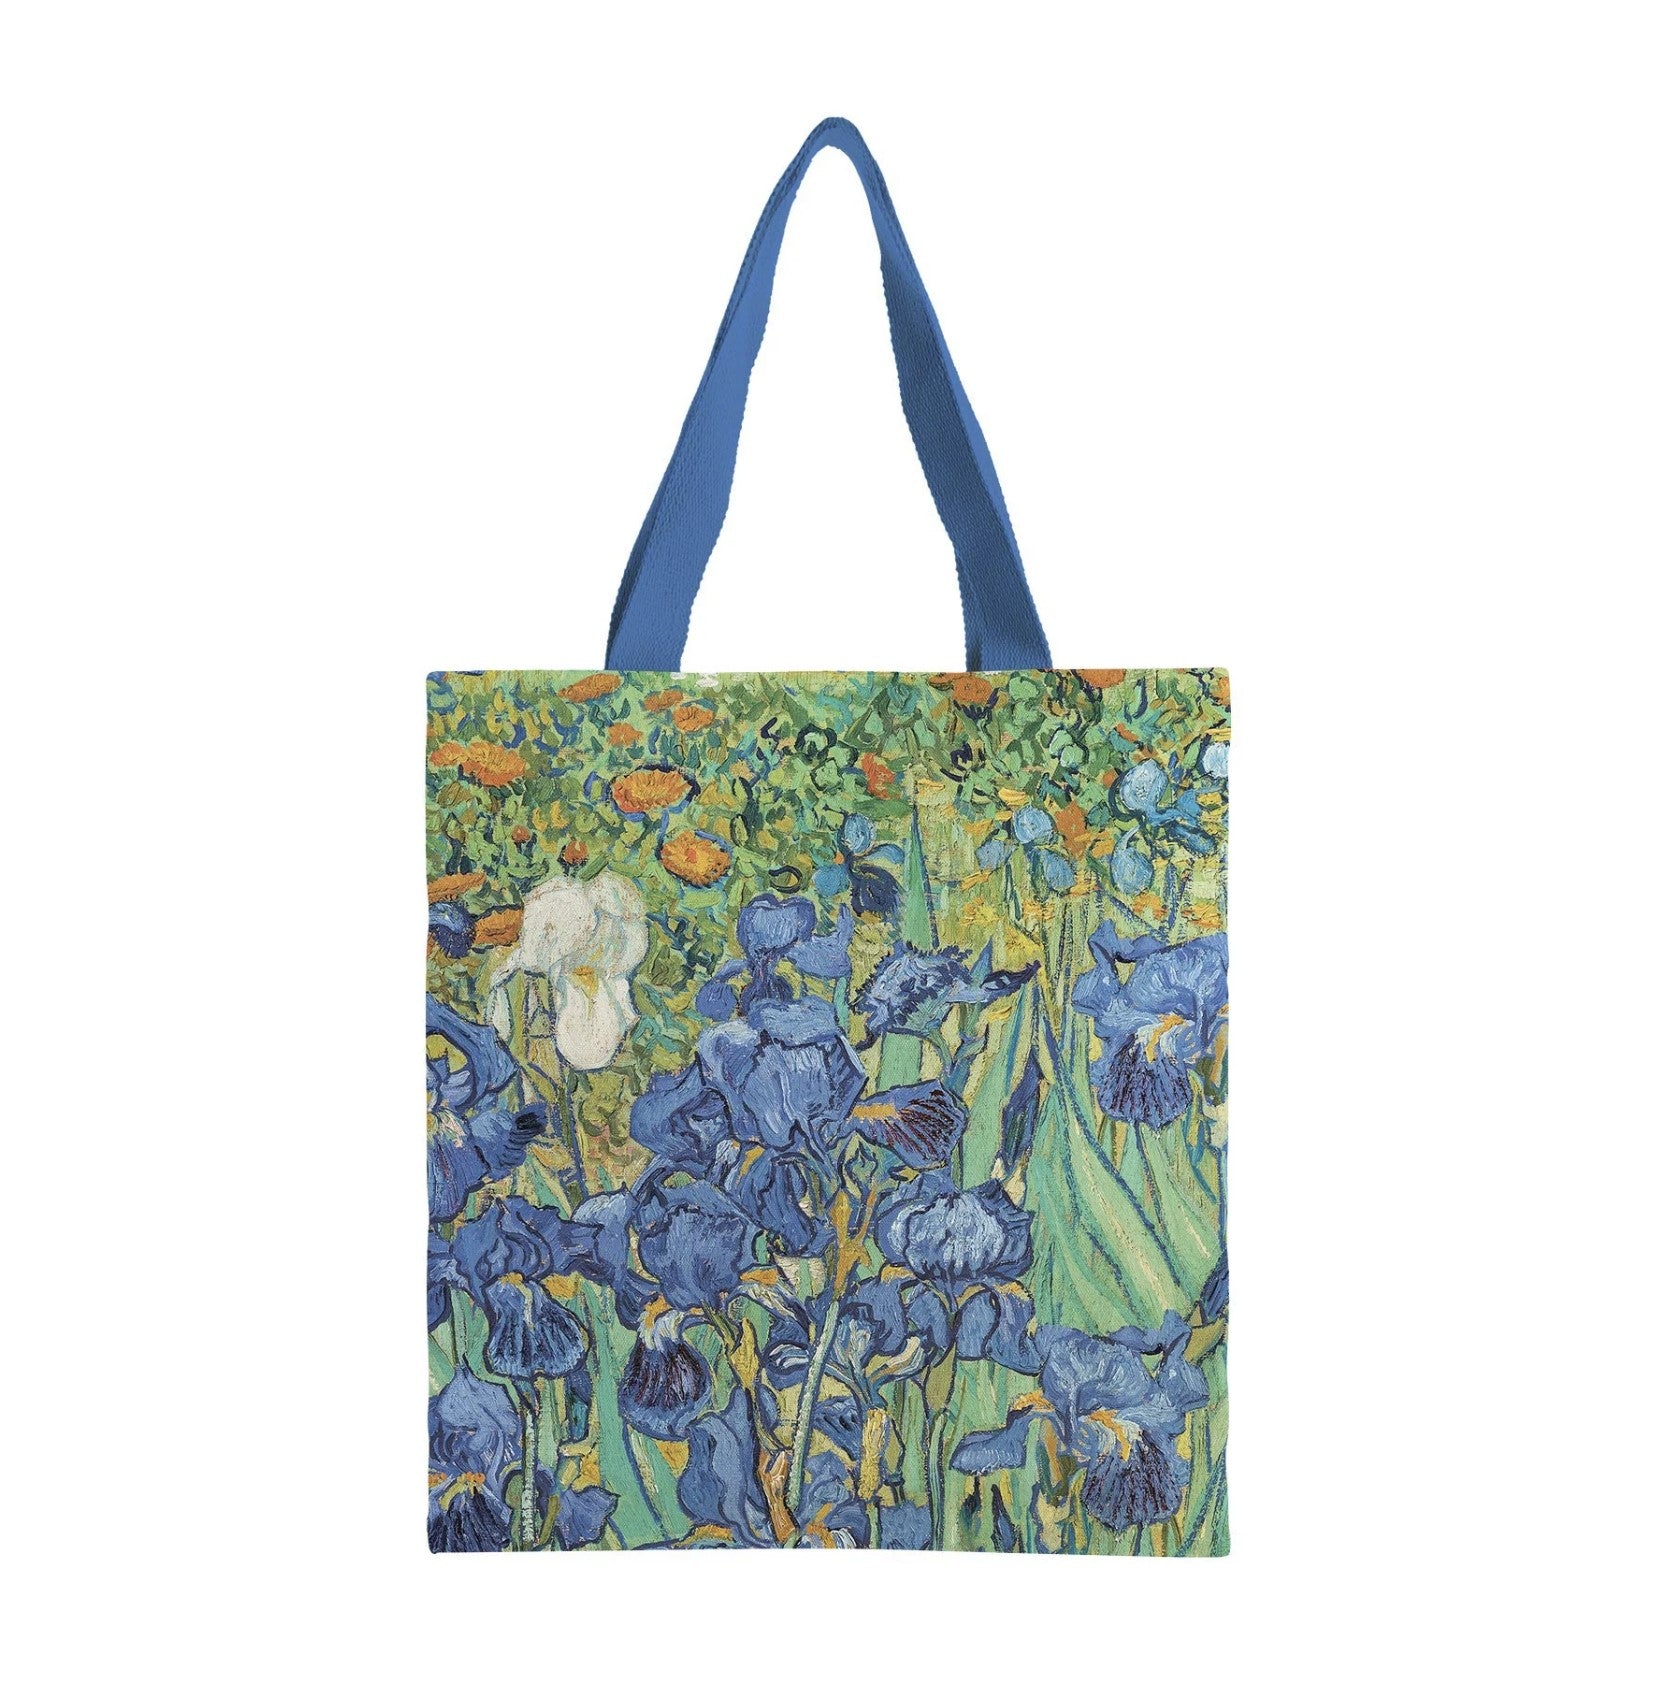 Fine Art Canvas Tote,     "Irises" by Vincent Van Gogh